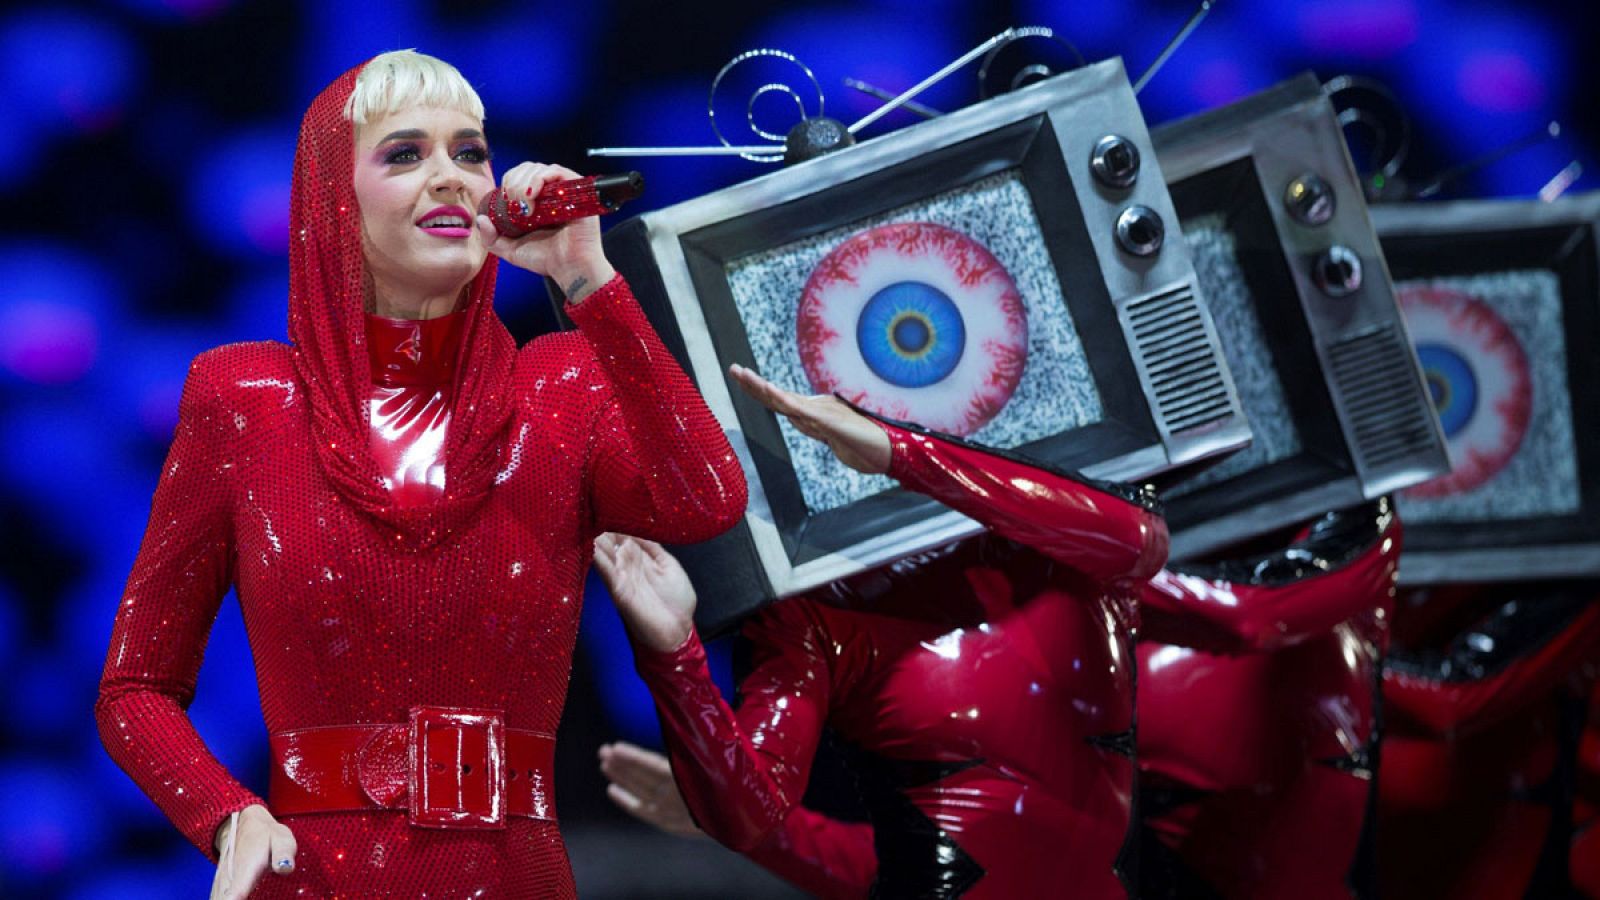 La cantante estadounidense Katy Perry durante el concierto que ofreció el jueves 28 de junio de 2018 en el Palau Sant Jordi de Barcelona.